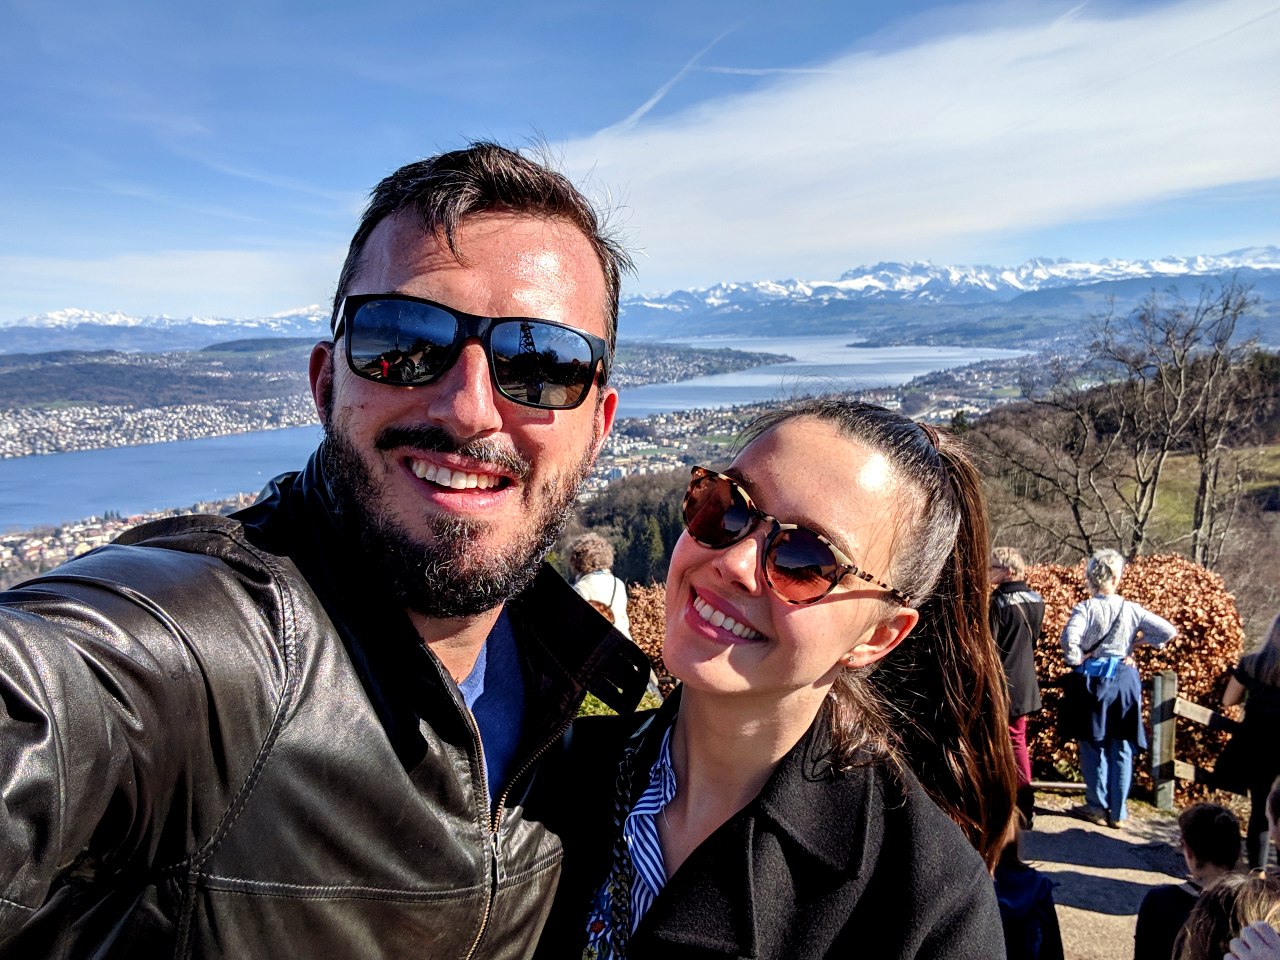 Matthias et Solène sur l'Uetliberg par une journée de printemps ensoleillée. Derrière eux, le lac de Zurich et les montagnes.